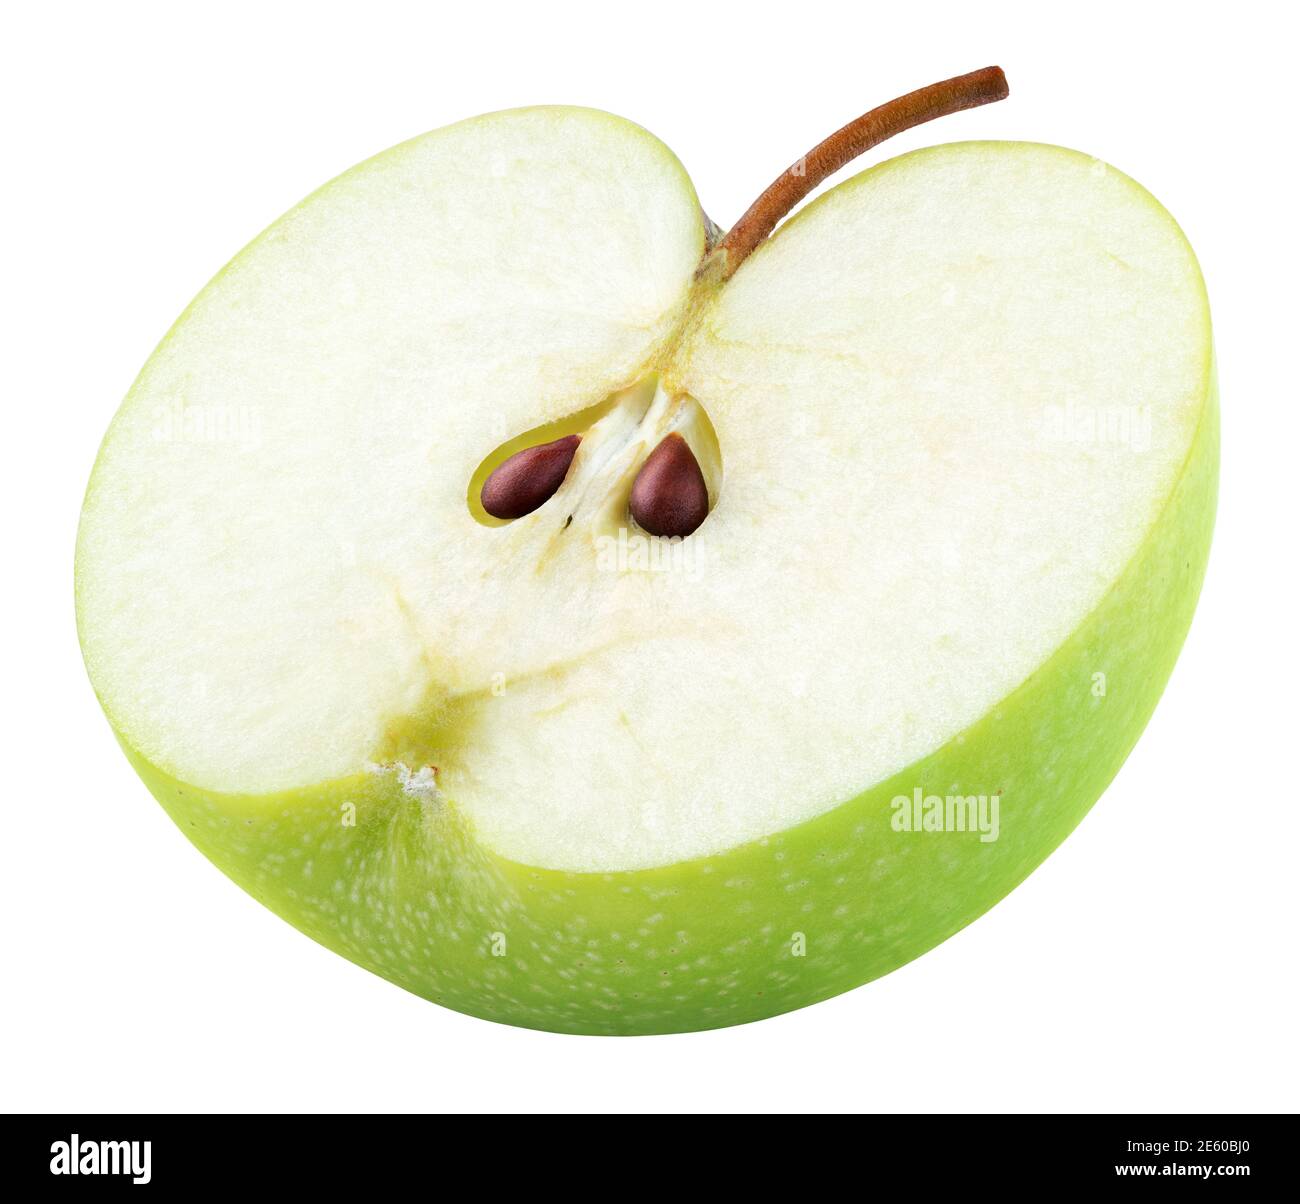 Metà verde di mela con semi e gambo isolato su sfondo bianco. Metà di mela verde con percorso di ritaglio. Profondità di campo completa Foto Stock